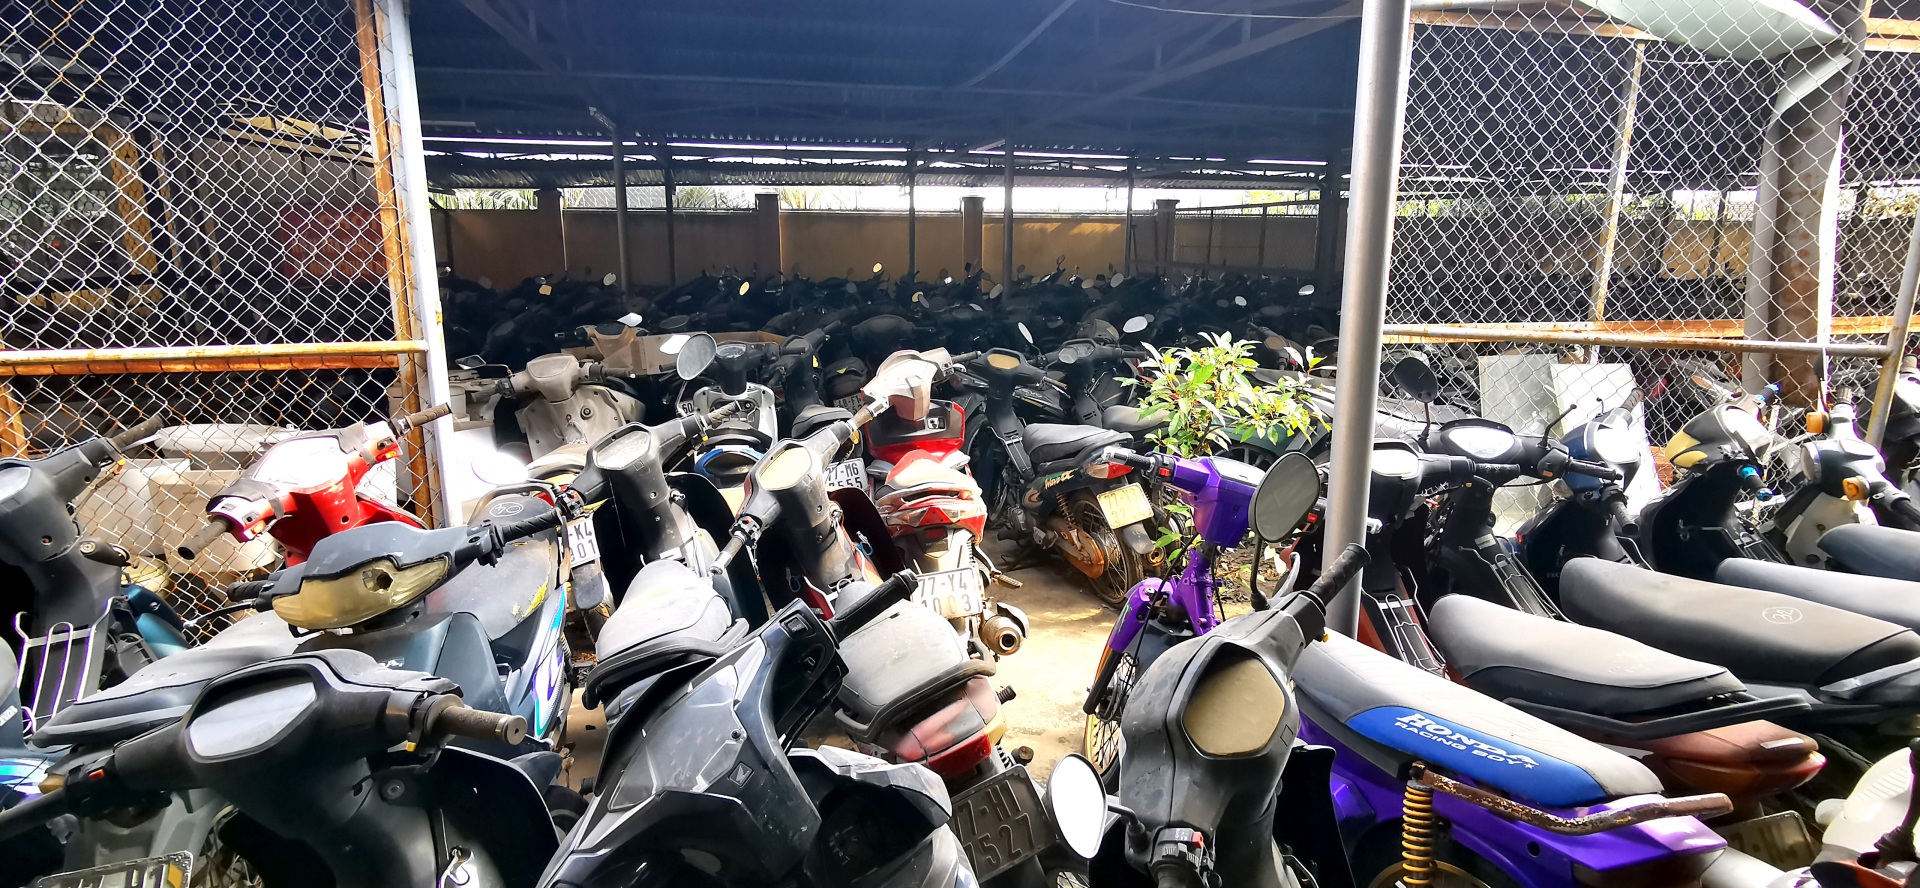 Trạm CSGT Tuy Phước - Bình Định: Giải pháp nào để bãi chứa xe vi phạm không bị quá tải?